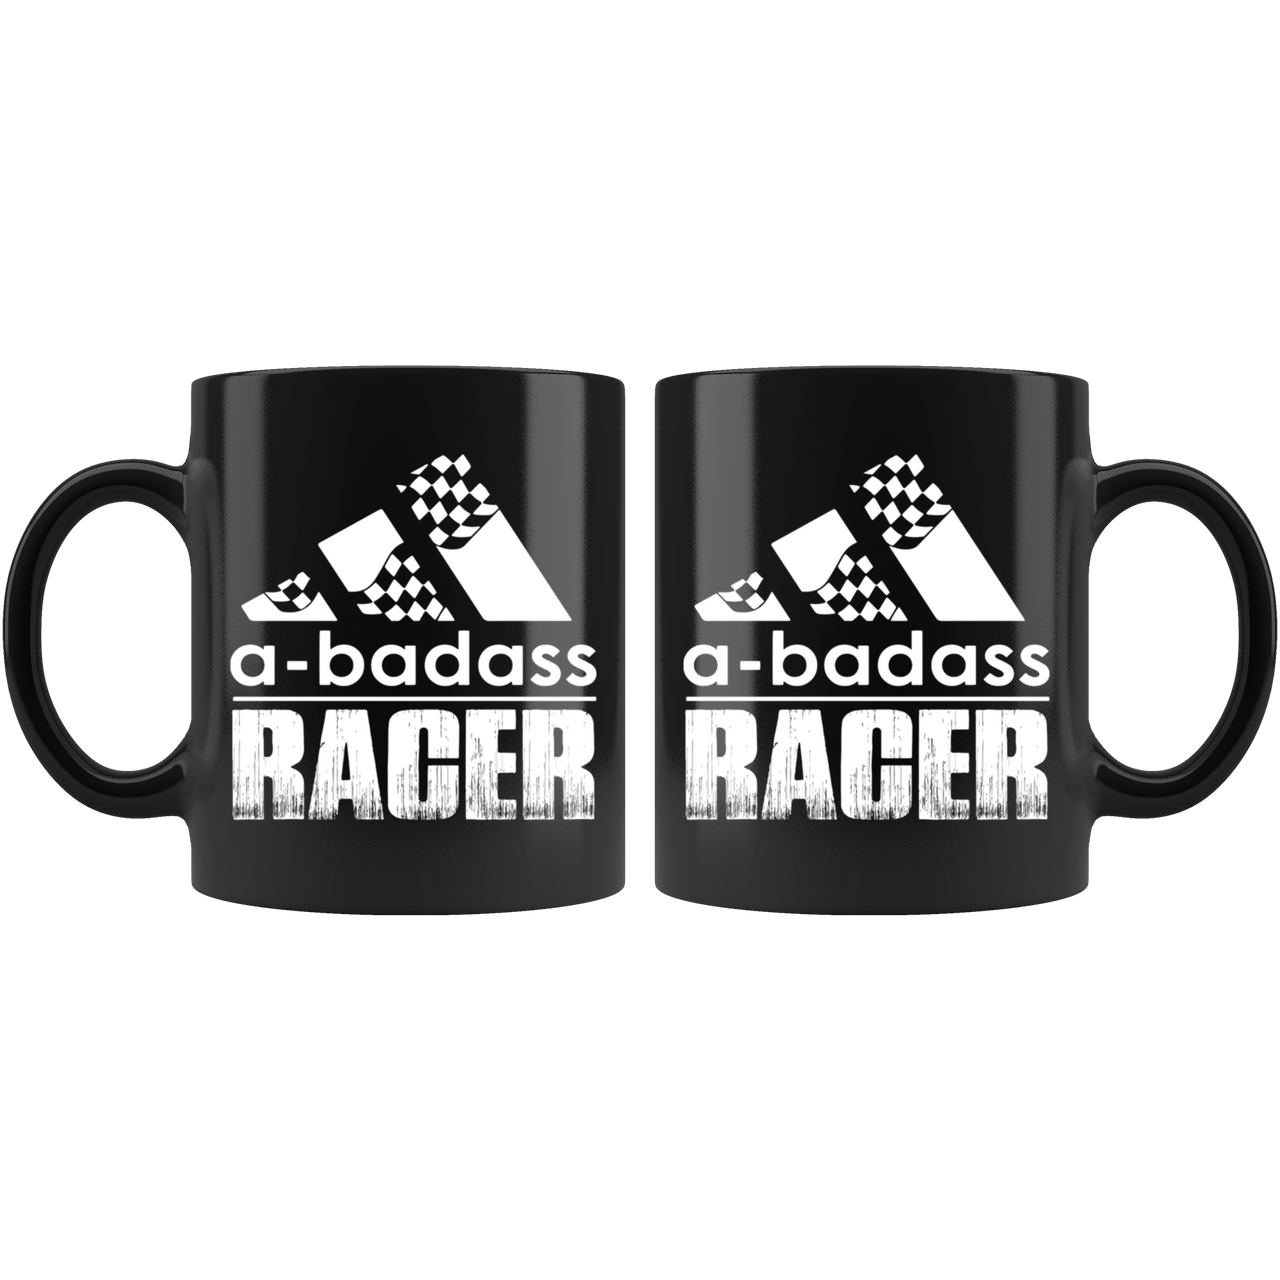 A-Badass Racer Mug!